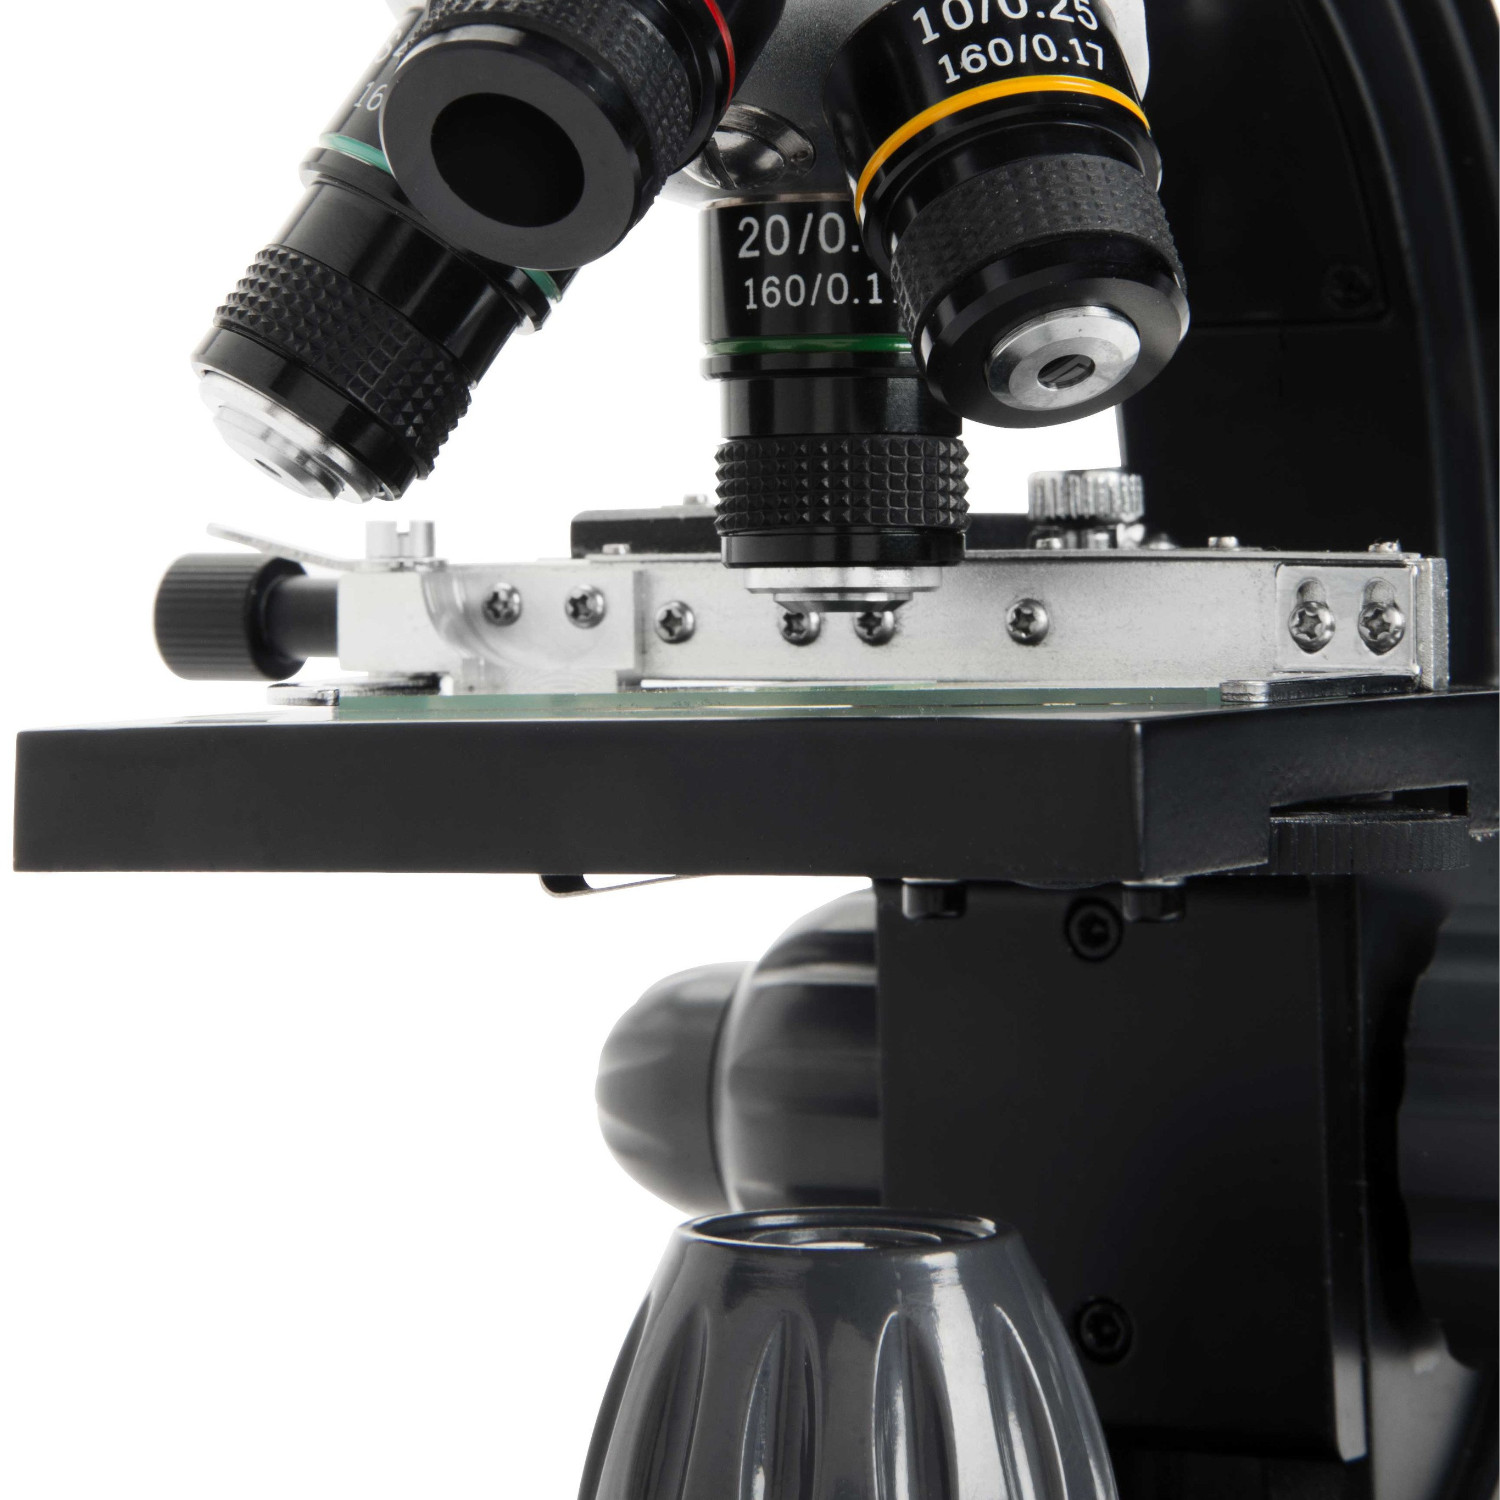 CELESTRON 顕微鏡 TetraView LCD デジタル顕微鏡